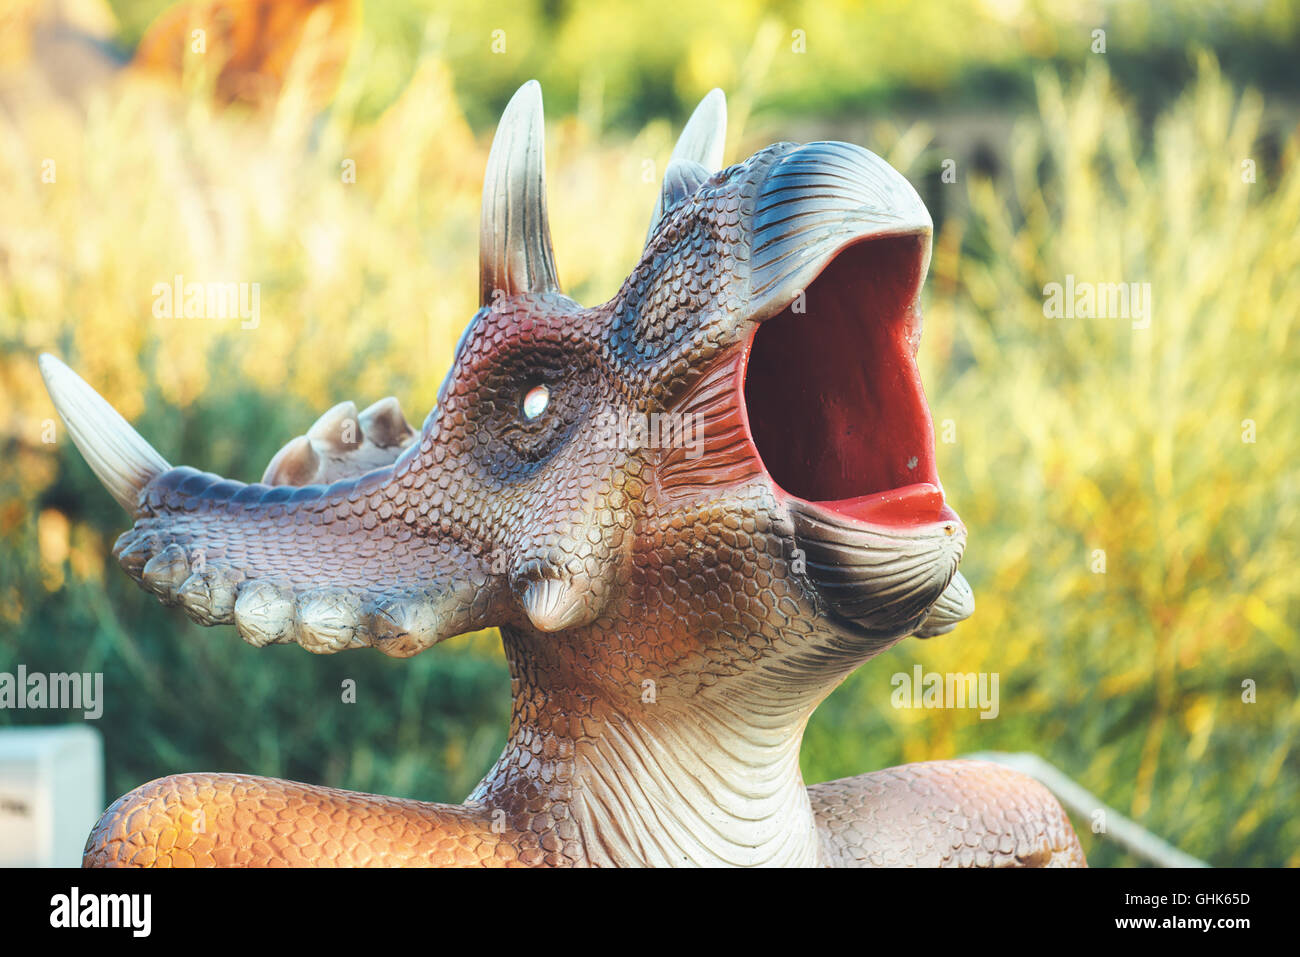 NOVI SAD, Serbien - 5. August 2016: Kleine Dinosaurier Trash bin Spielzeug von themed Entertainment Dino-Park in Novi Sad. Stockfoto